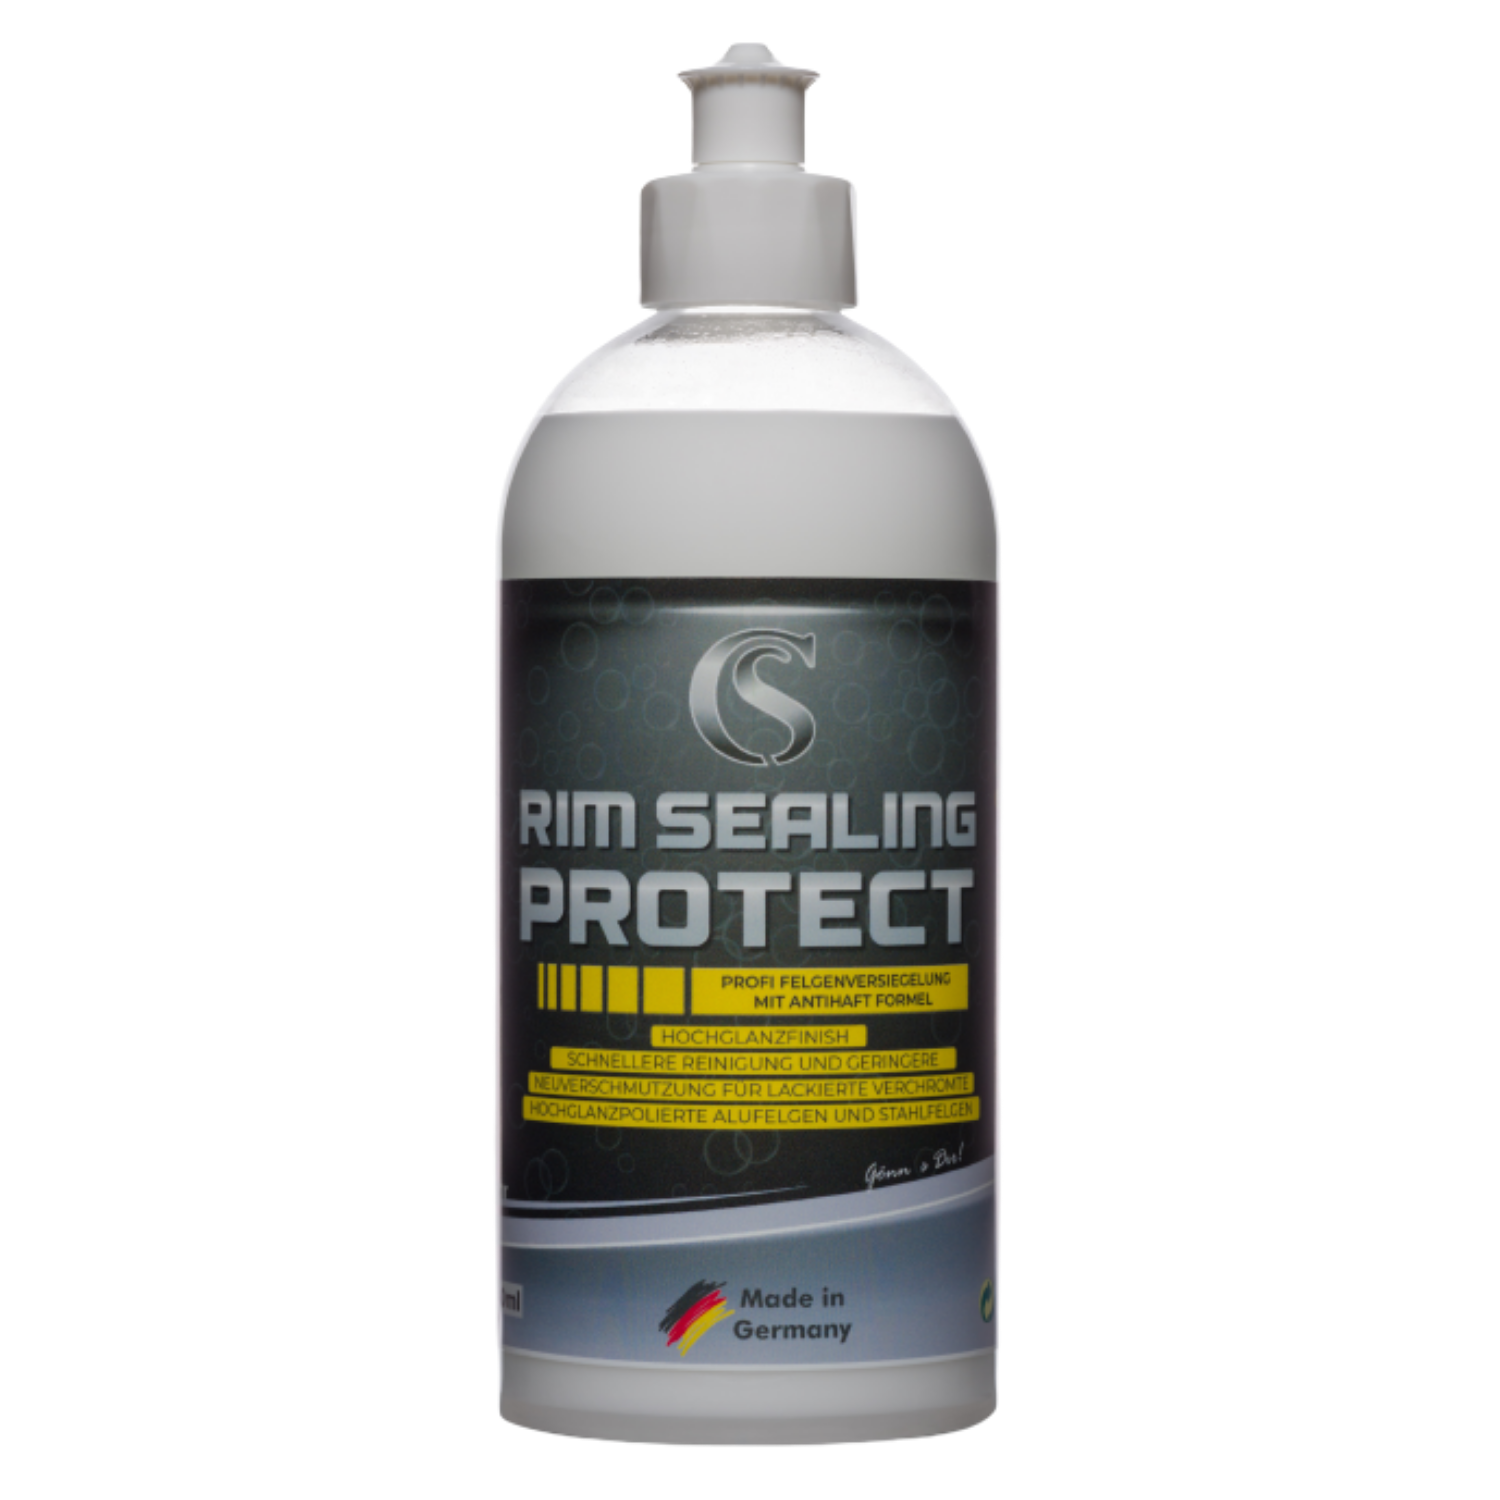 Car Sense Rim Sealing Protect Felgen-Versiegelung mit PTFE-Technologie - Hitzebeständig und langanhaltend - Schutz vor Bremsstaub, Schmutz, Wasser und Salz